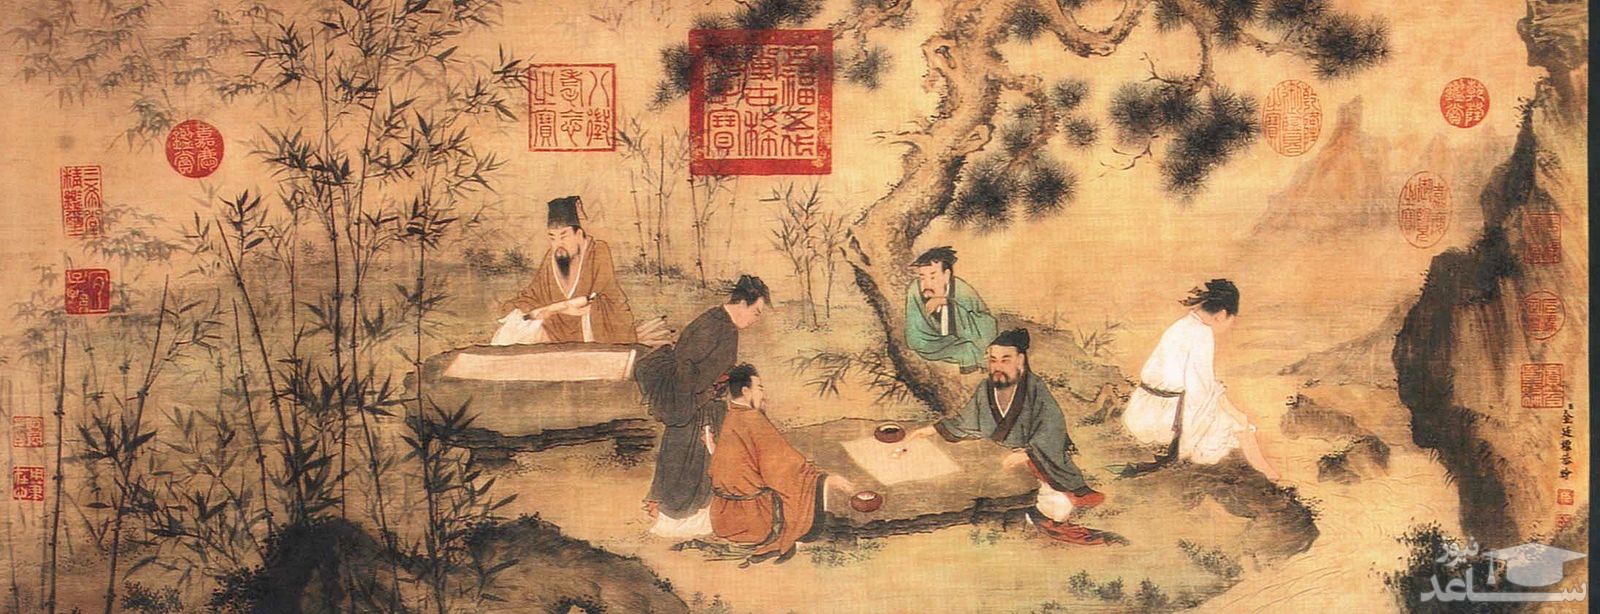 آموزش در چین باستان